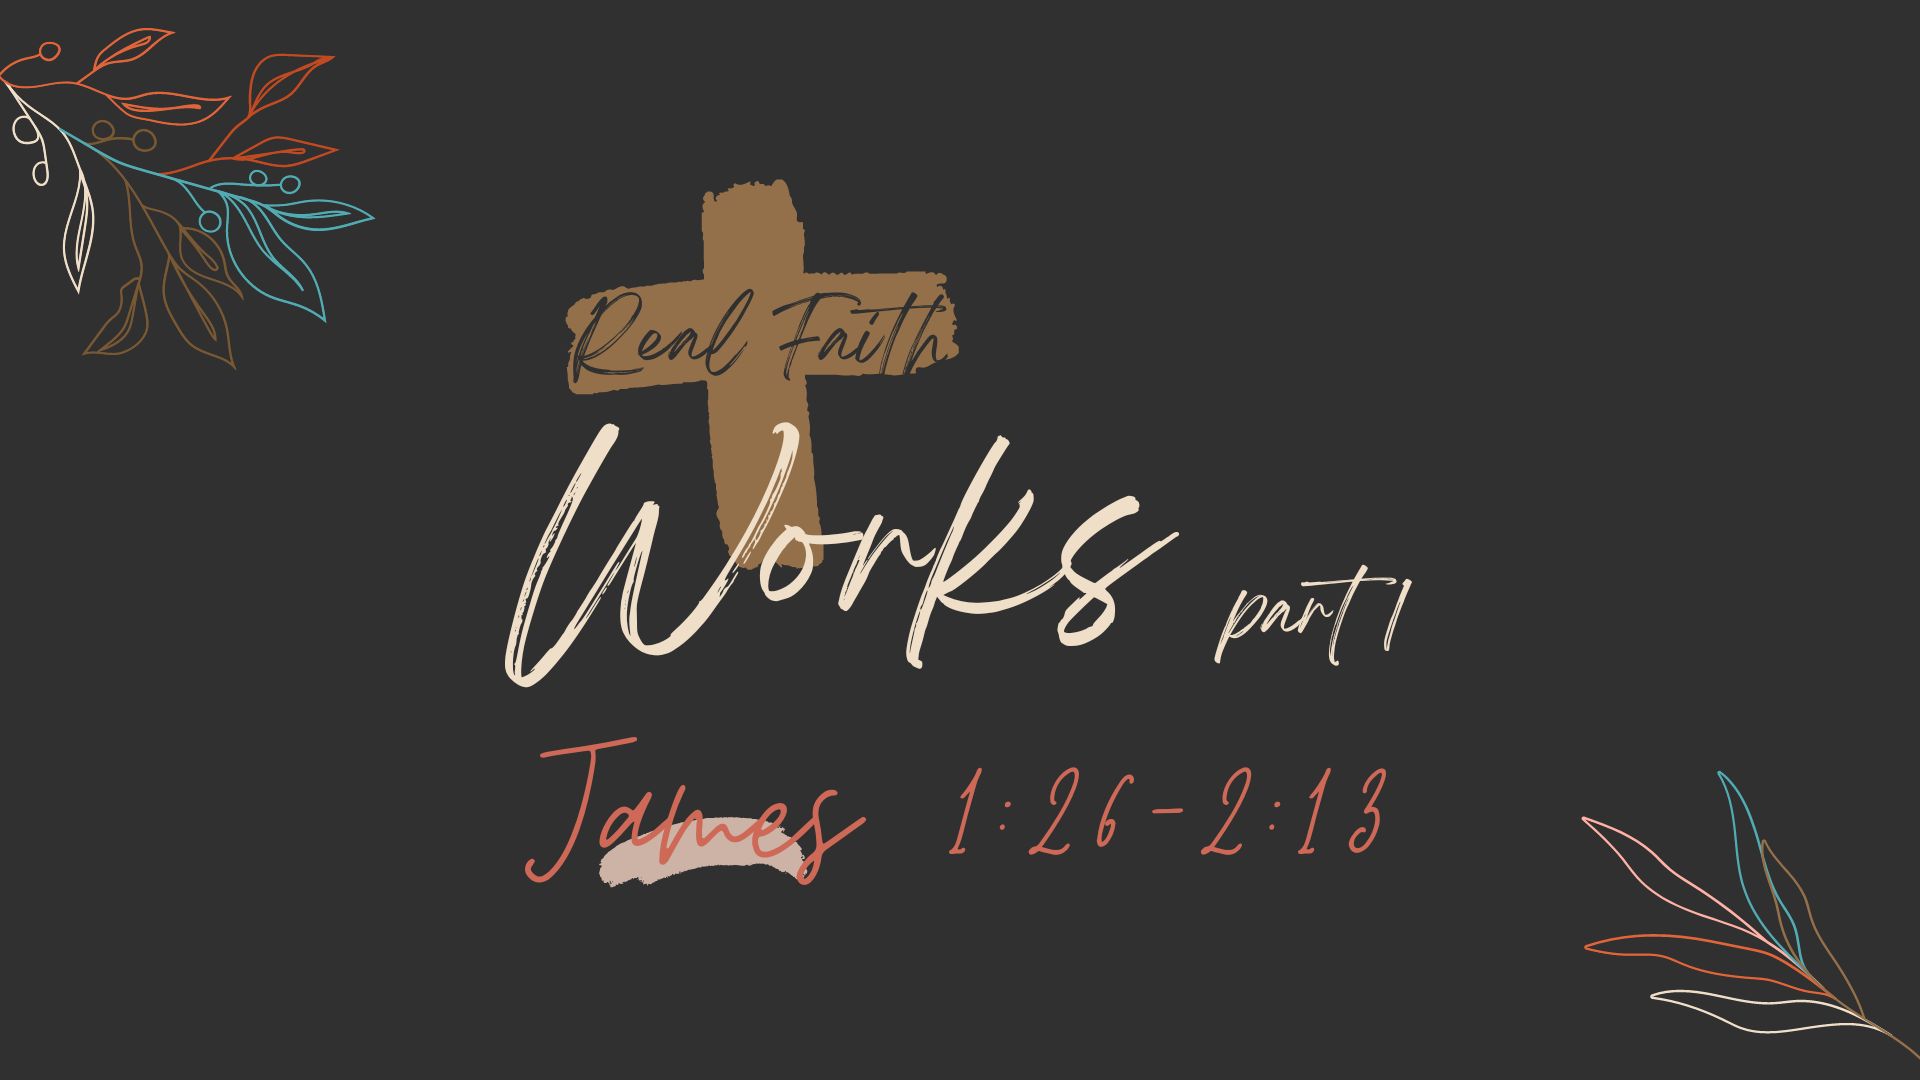 Real Faith 5 - Works Part 1